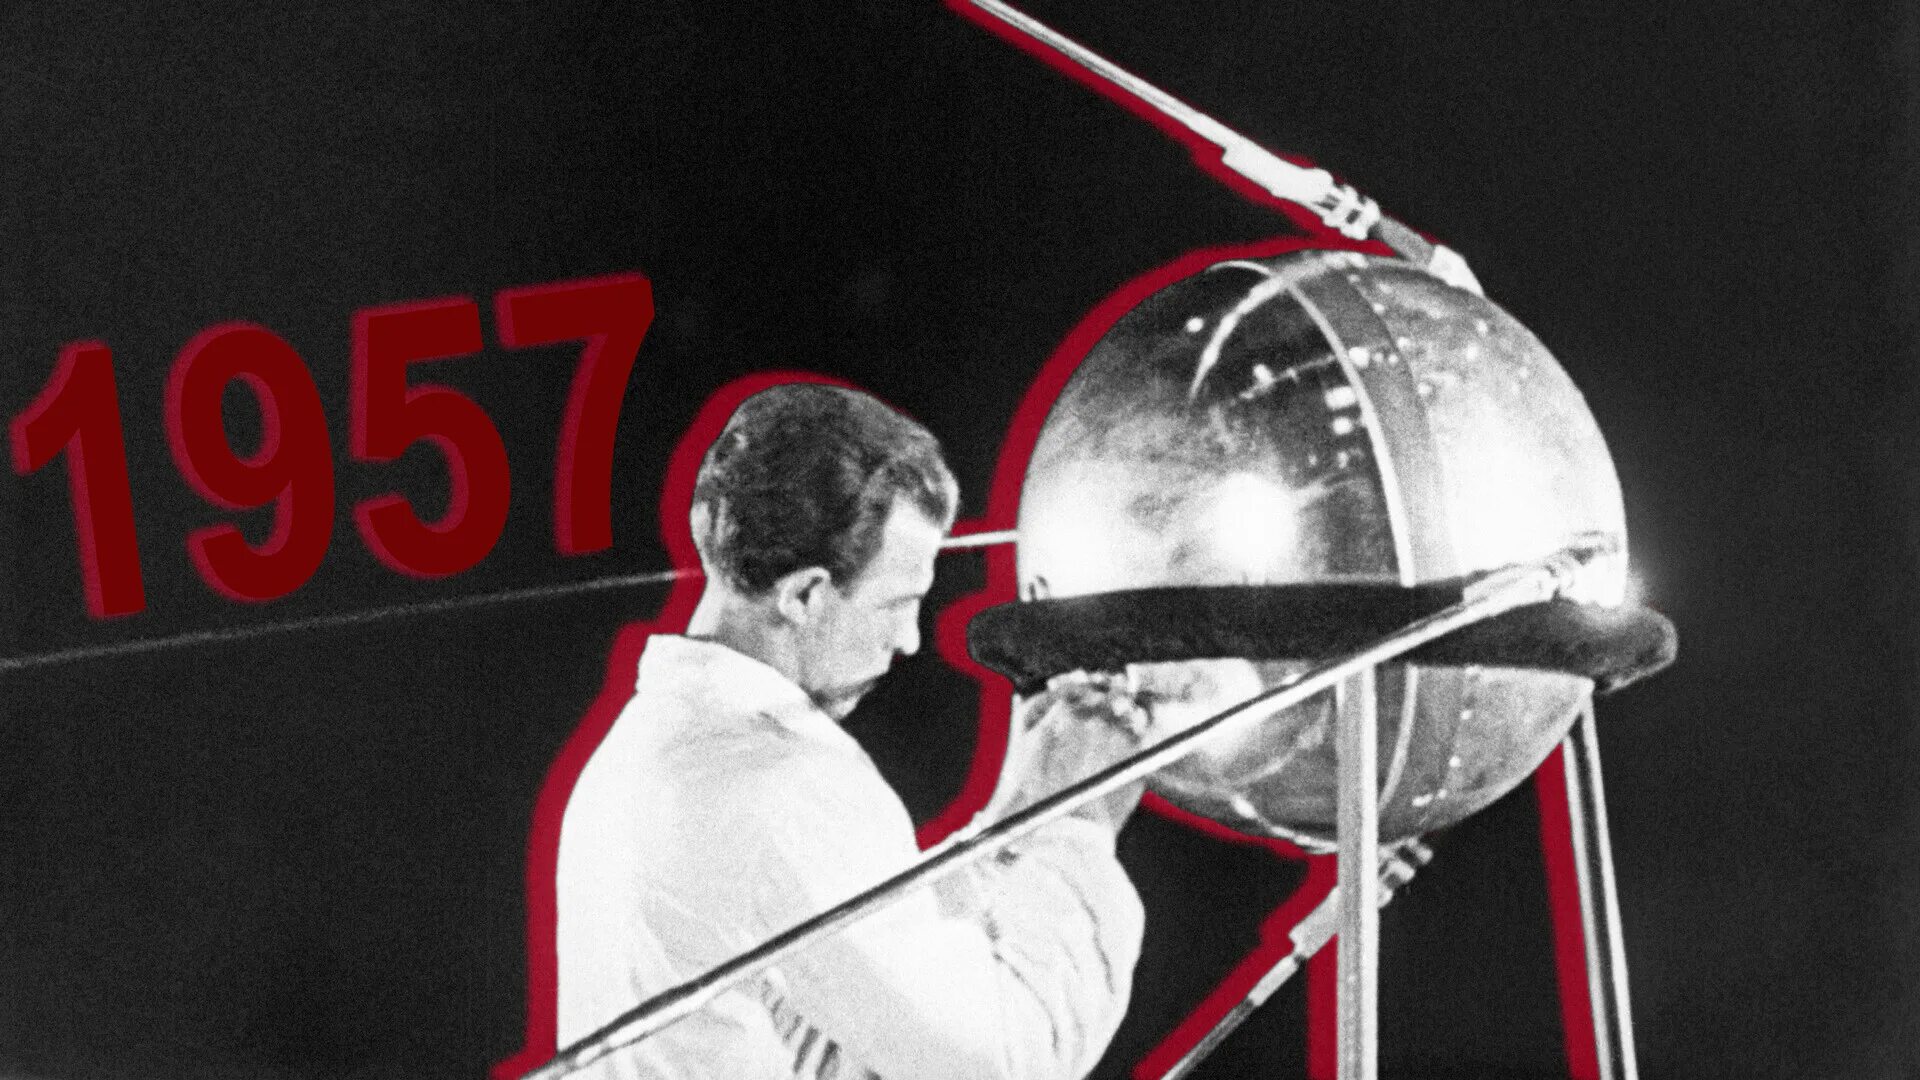 Спутник 1 первый искусственный Спутник земли. Первый Спутник земли запущенный 4 октября 1957 СССР. Первый Спутник земли СССР октябрь 1957. 4 Октября 1957-первый ИСЗ "Спутник" (СССР)..